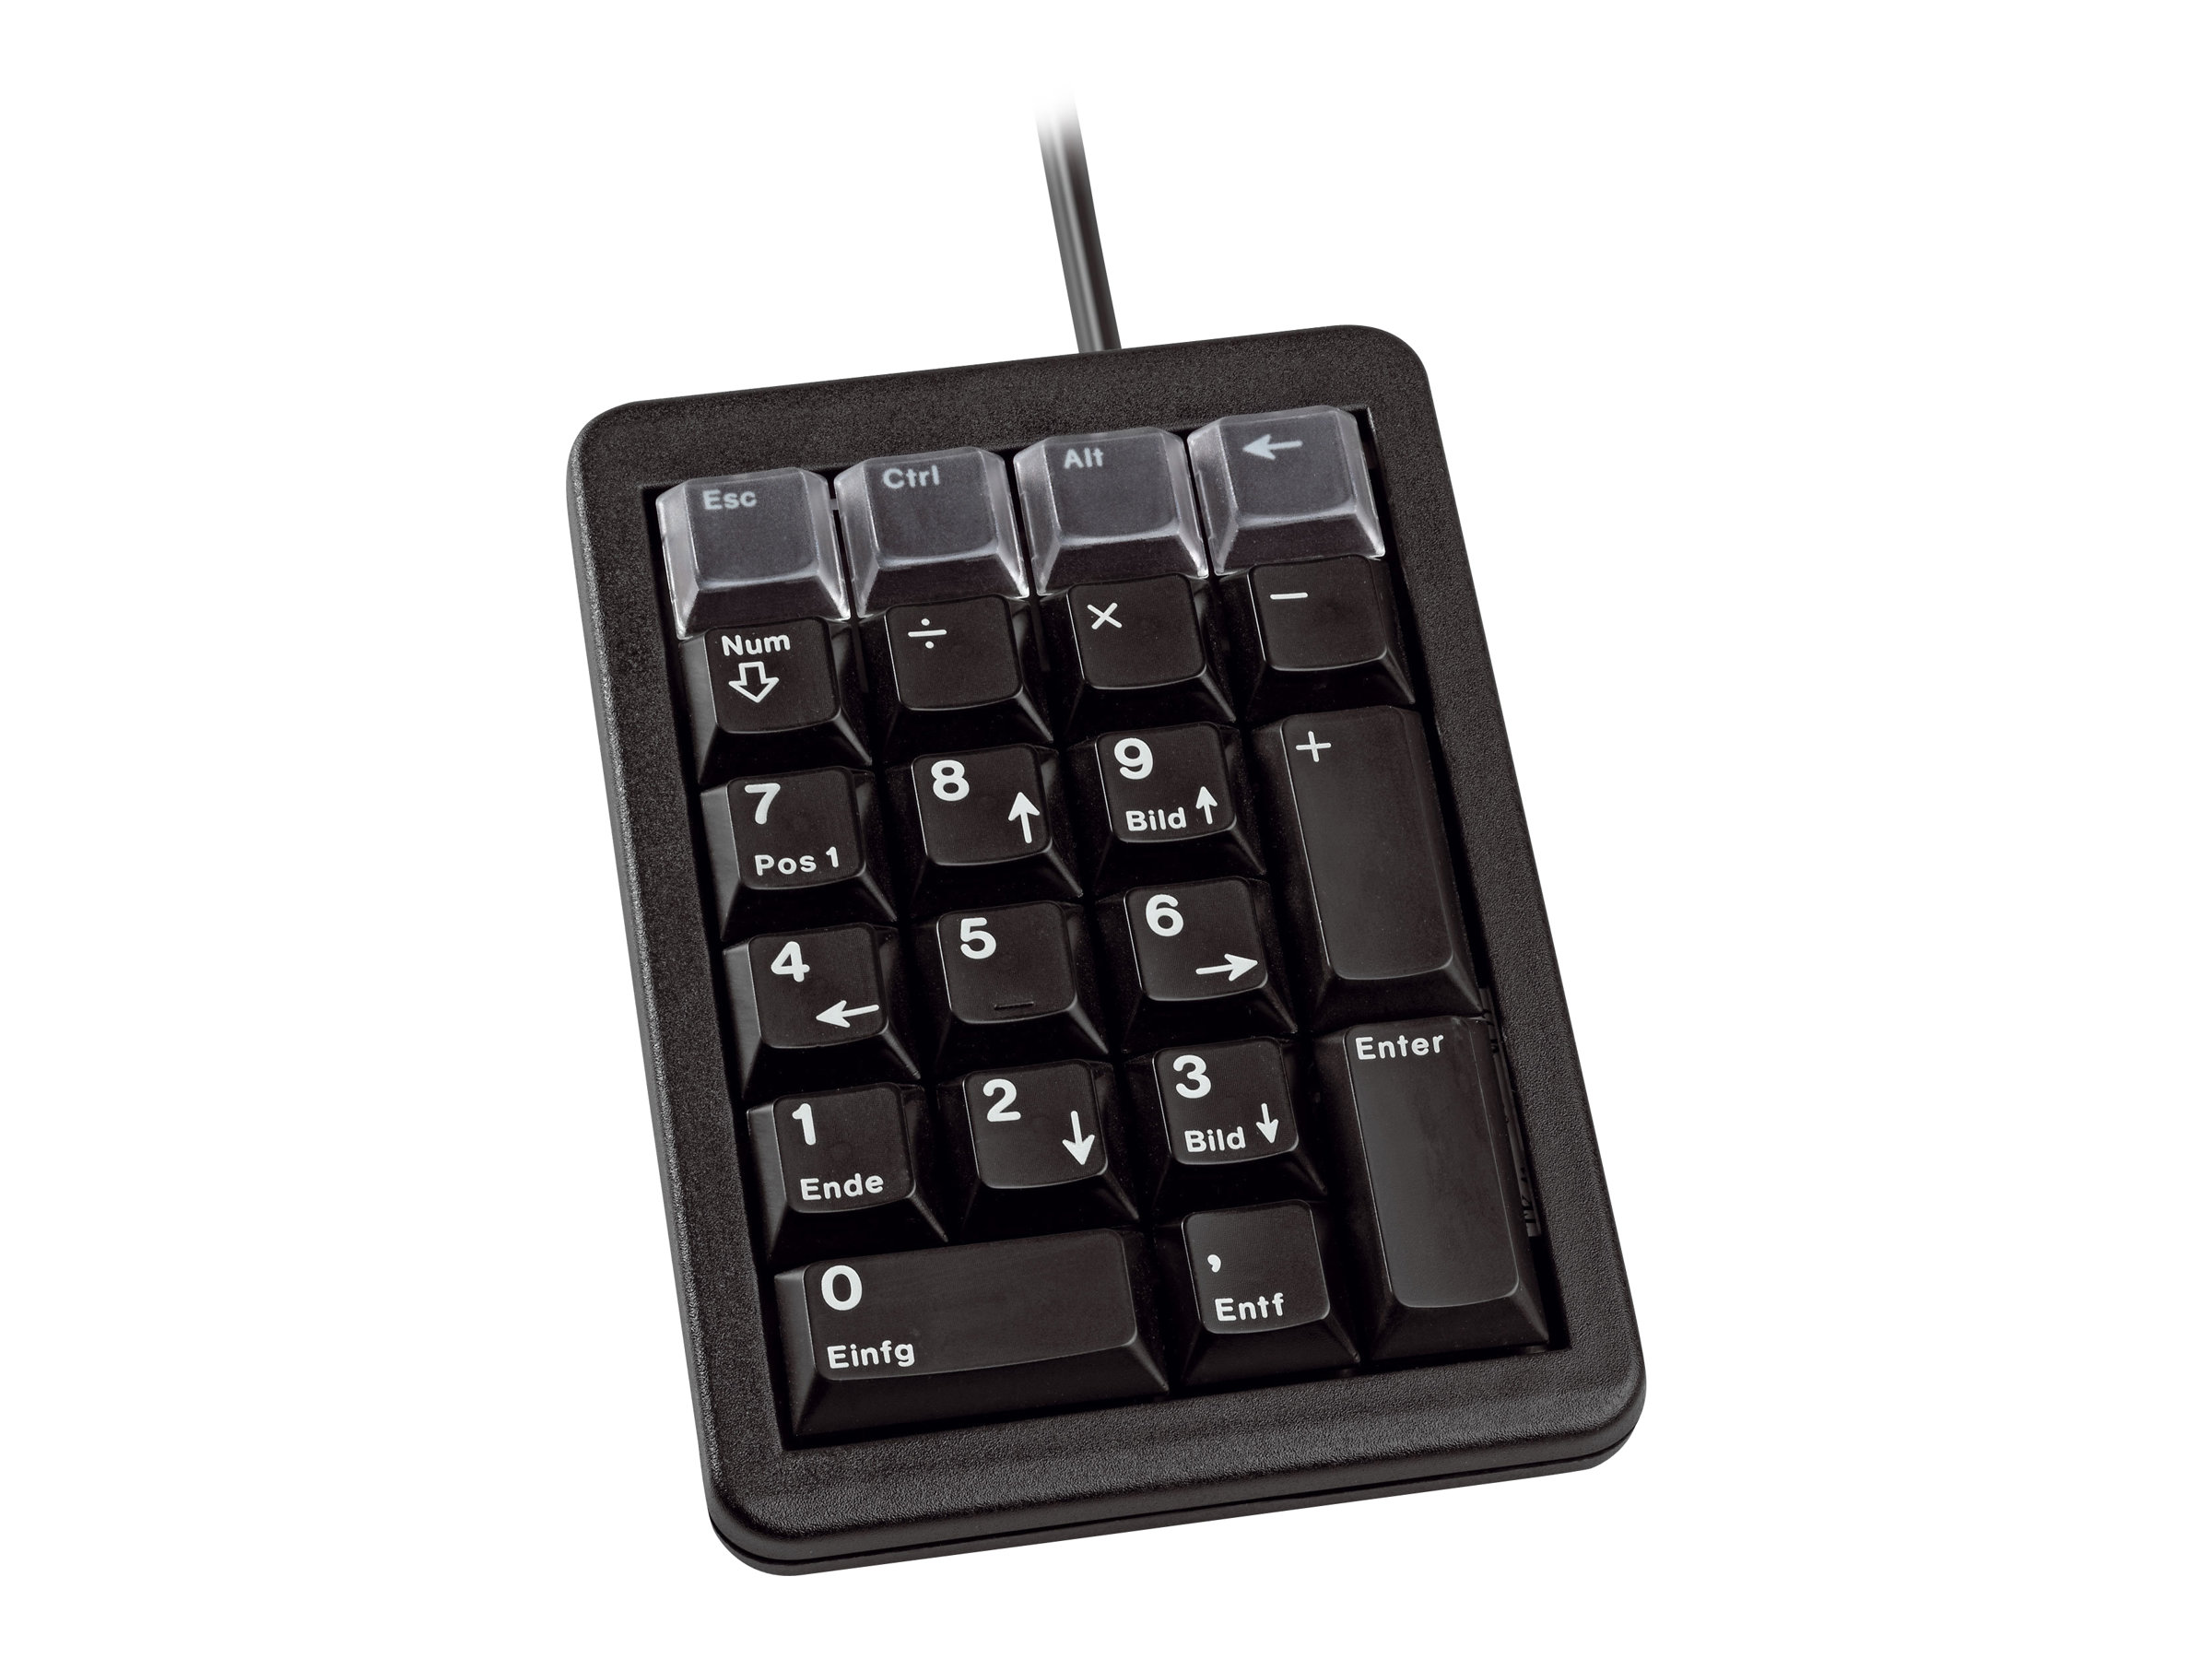 CHERRY Keypad G84-4700 - Tastenfeld - USB - Deutsch - Schwarz